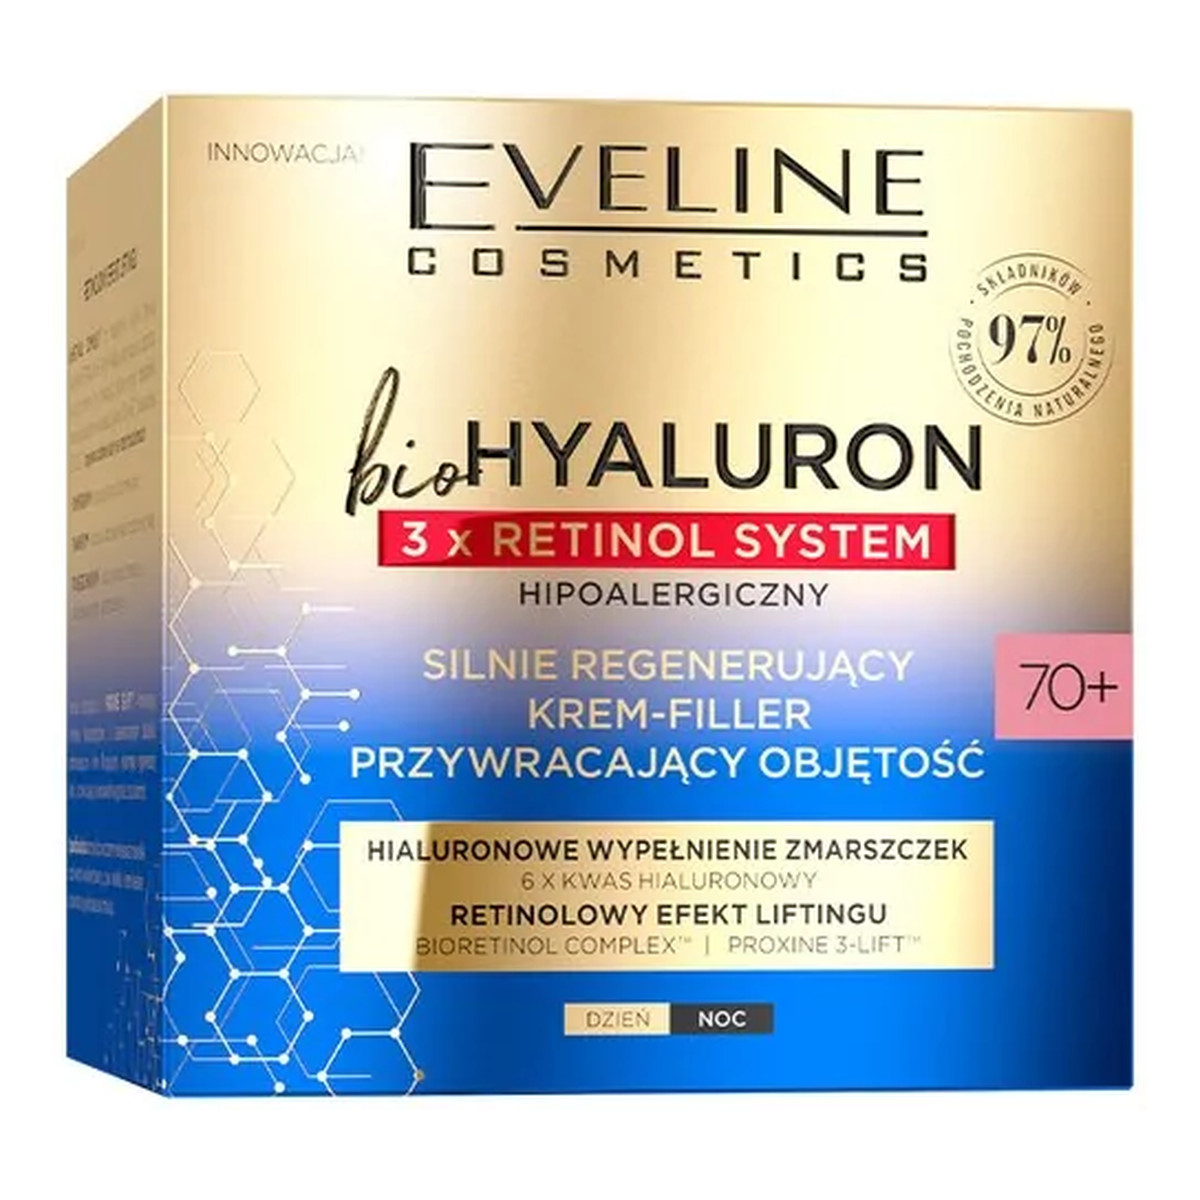 Eveline BioHyaluron 3xRetinol System Silnie regenerujący Krem-Filler przywracający objętość 70+ 50ml